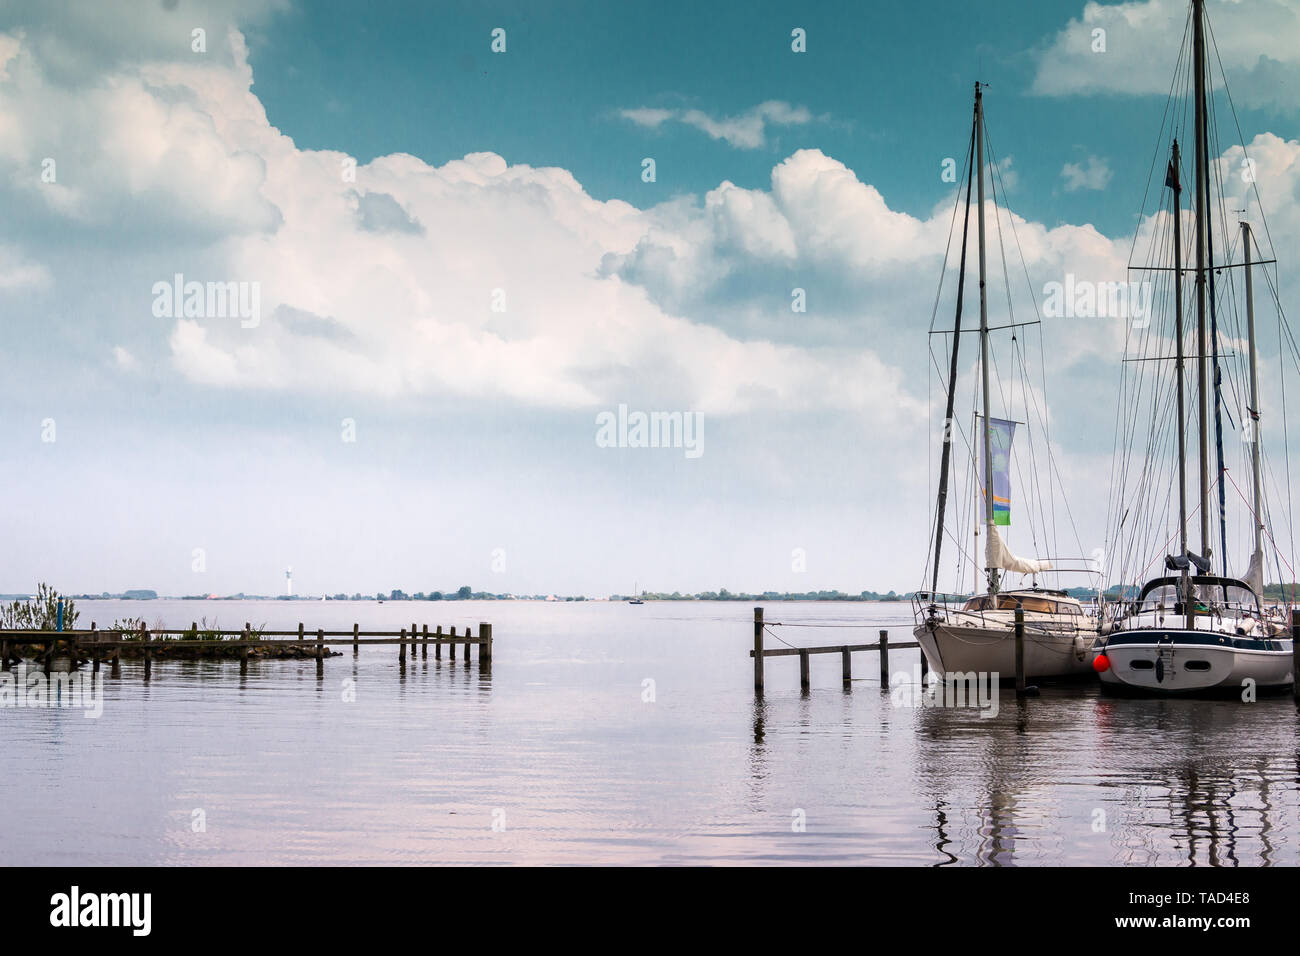 Voiliers dans le port à bord d'un lac dans la province de Frise aux Pays-Bas, à proximité du village Woudsend Banque D'Images